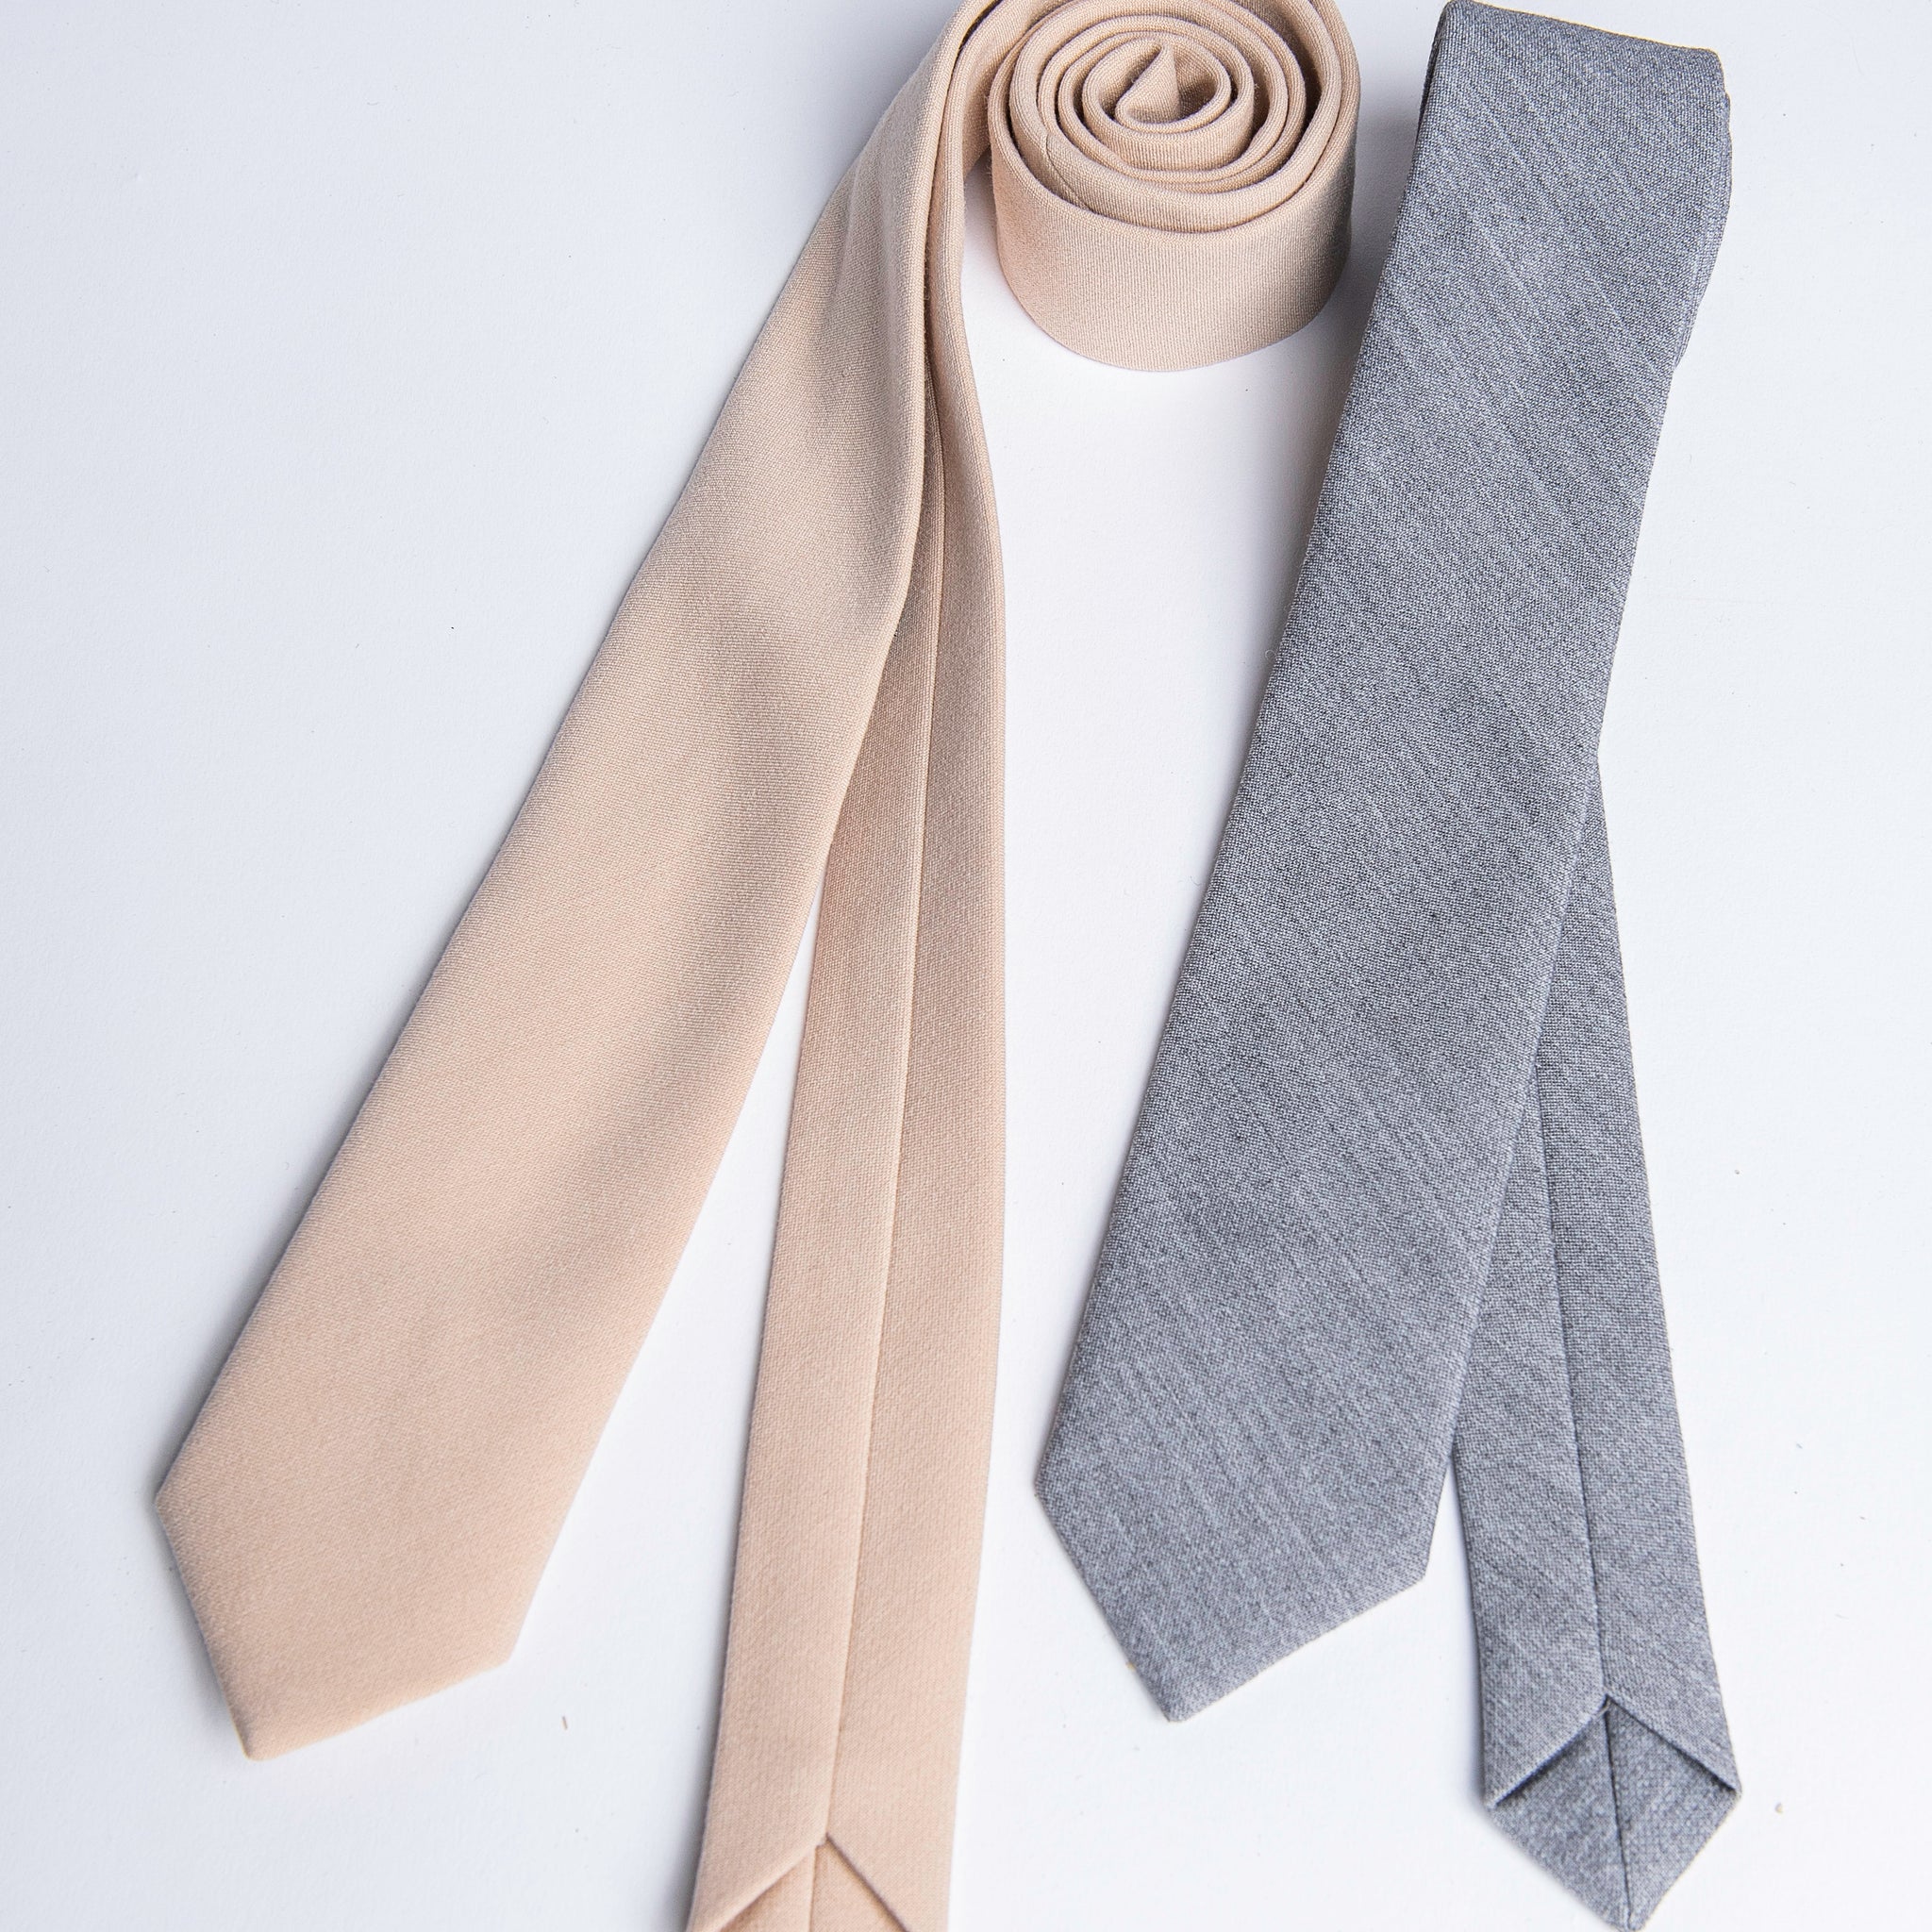 Damski krawat/pasek w dowolnym kolorze